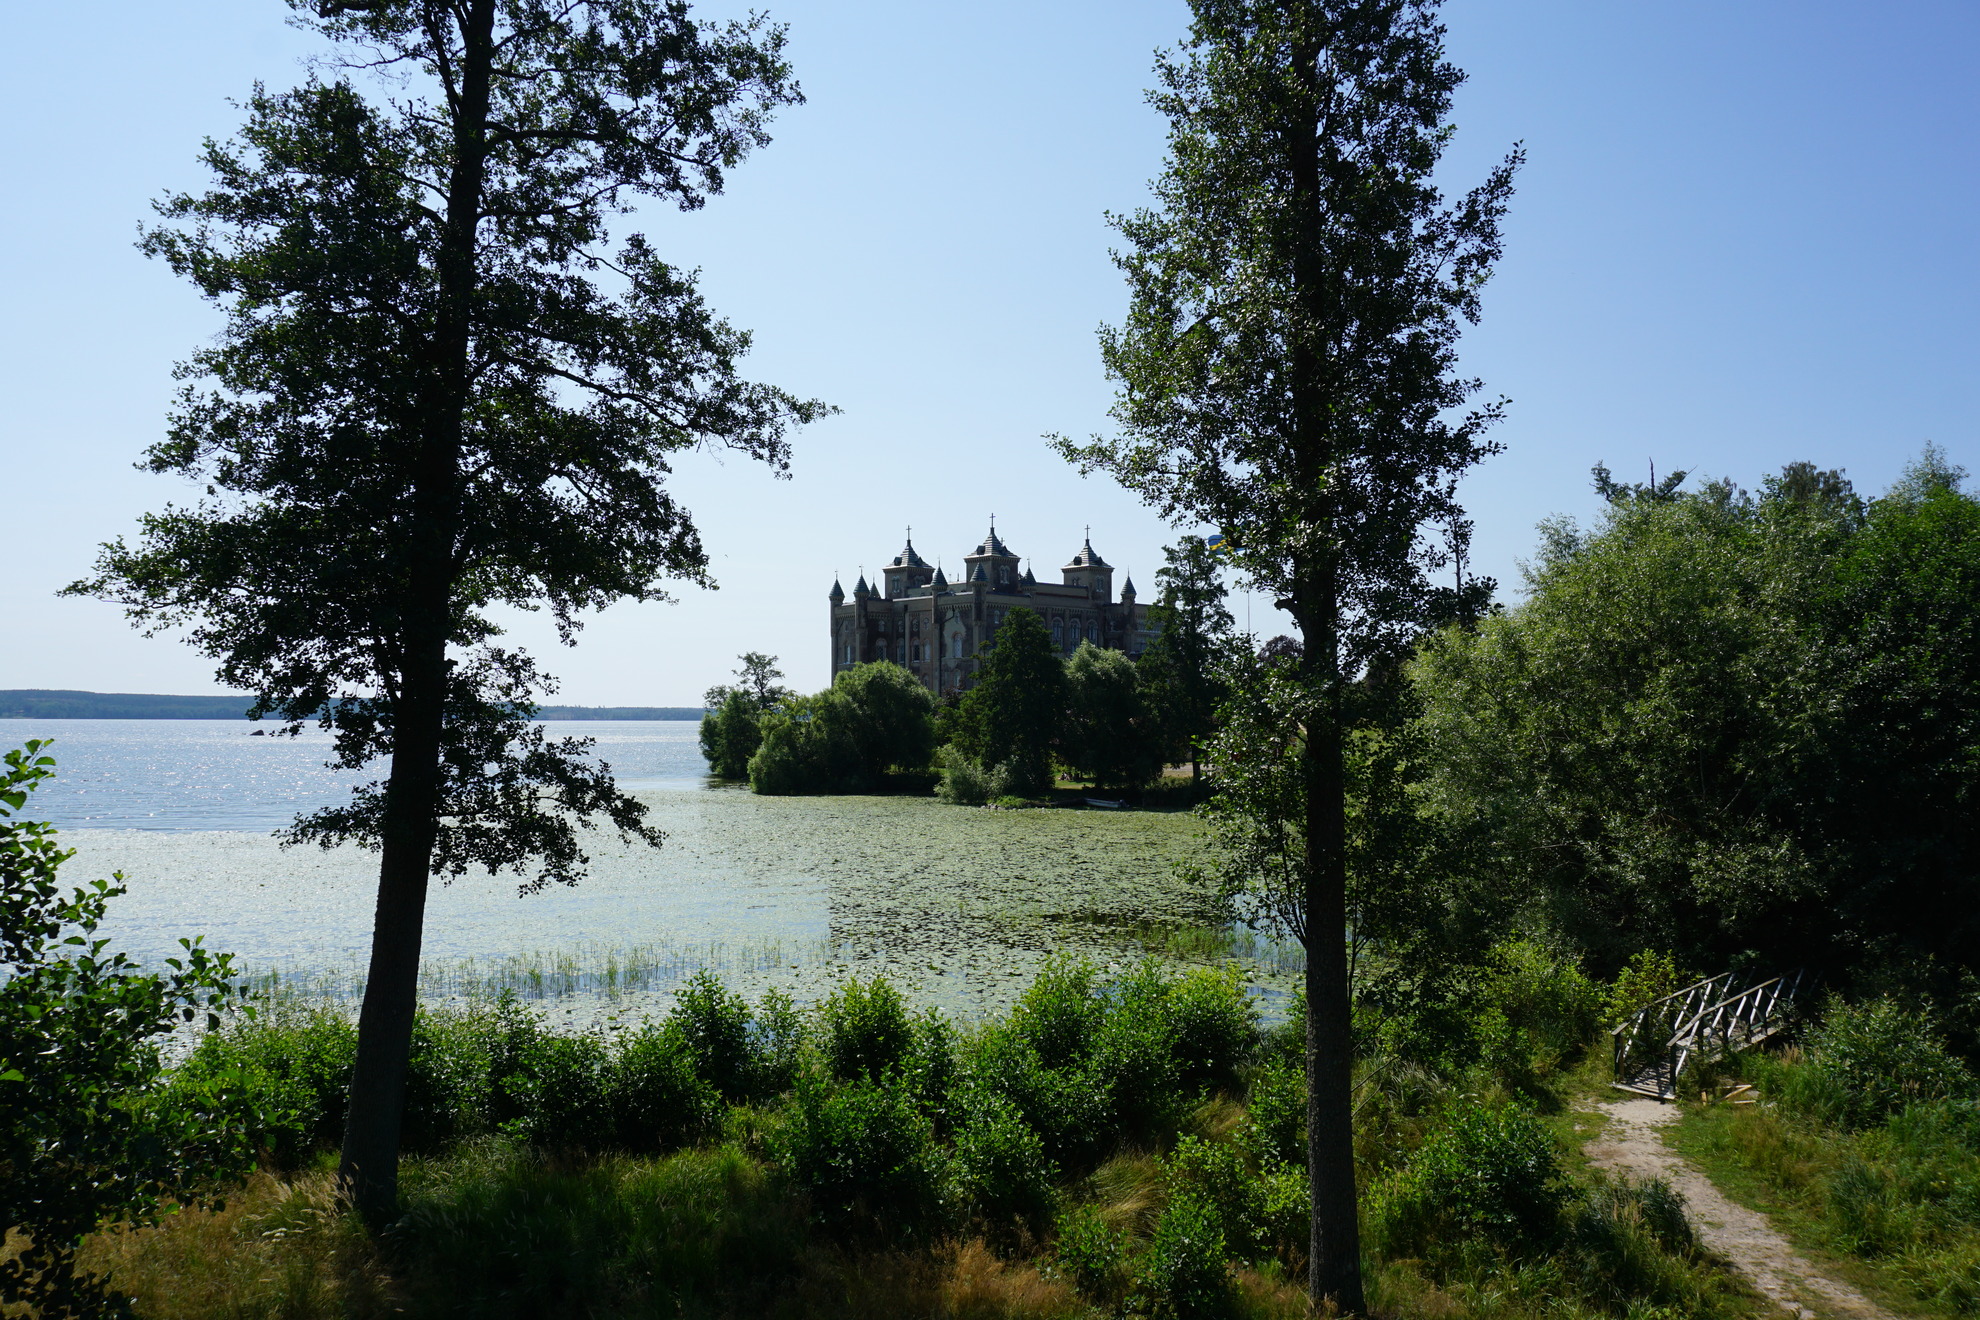 Stora Sundby castle